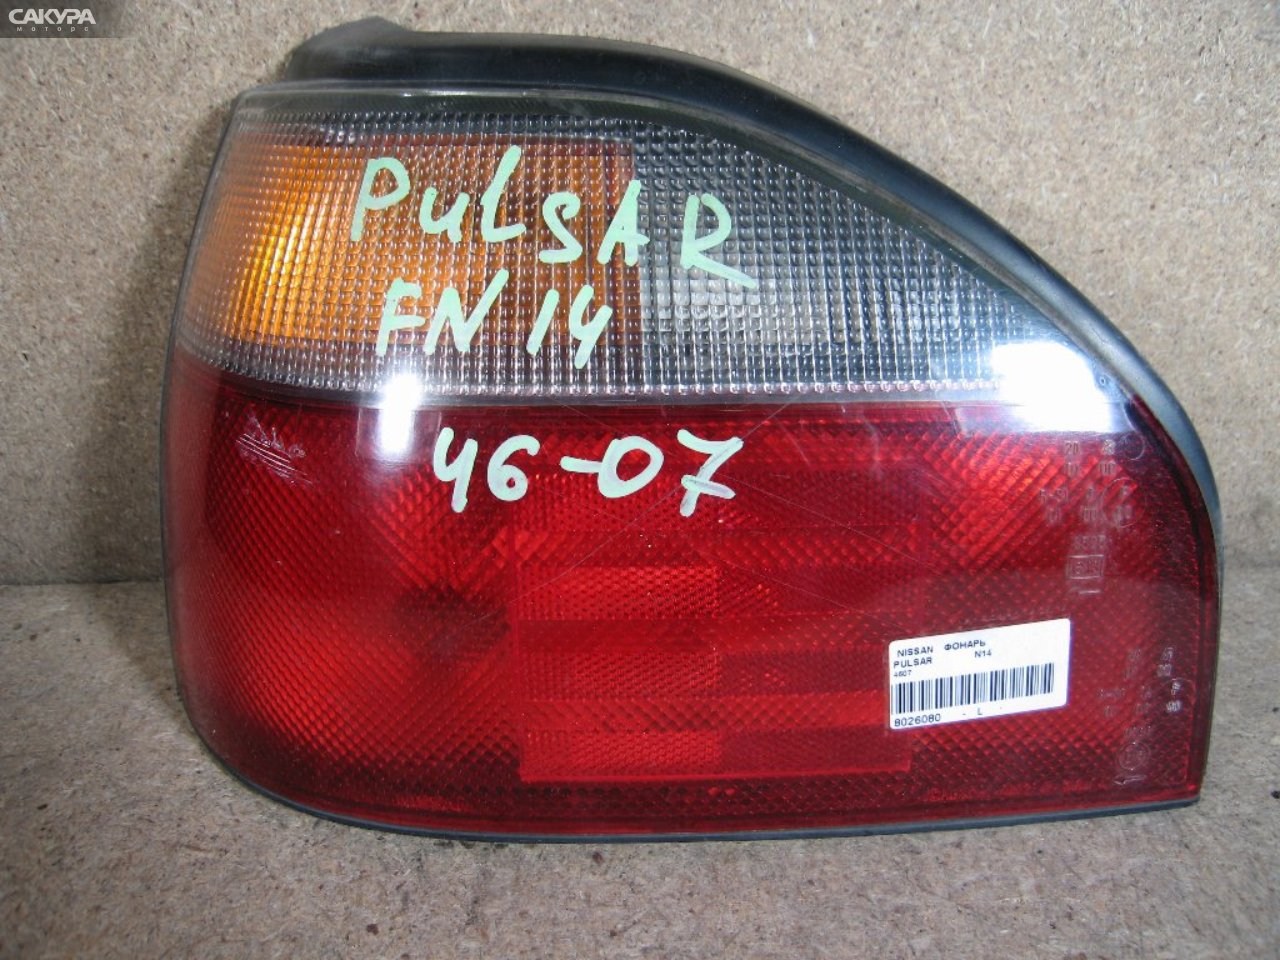 Фонарь стоп-сигнала левый Nissan Pulsar N14 4607: купить в Сакура Абакан.